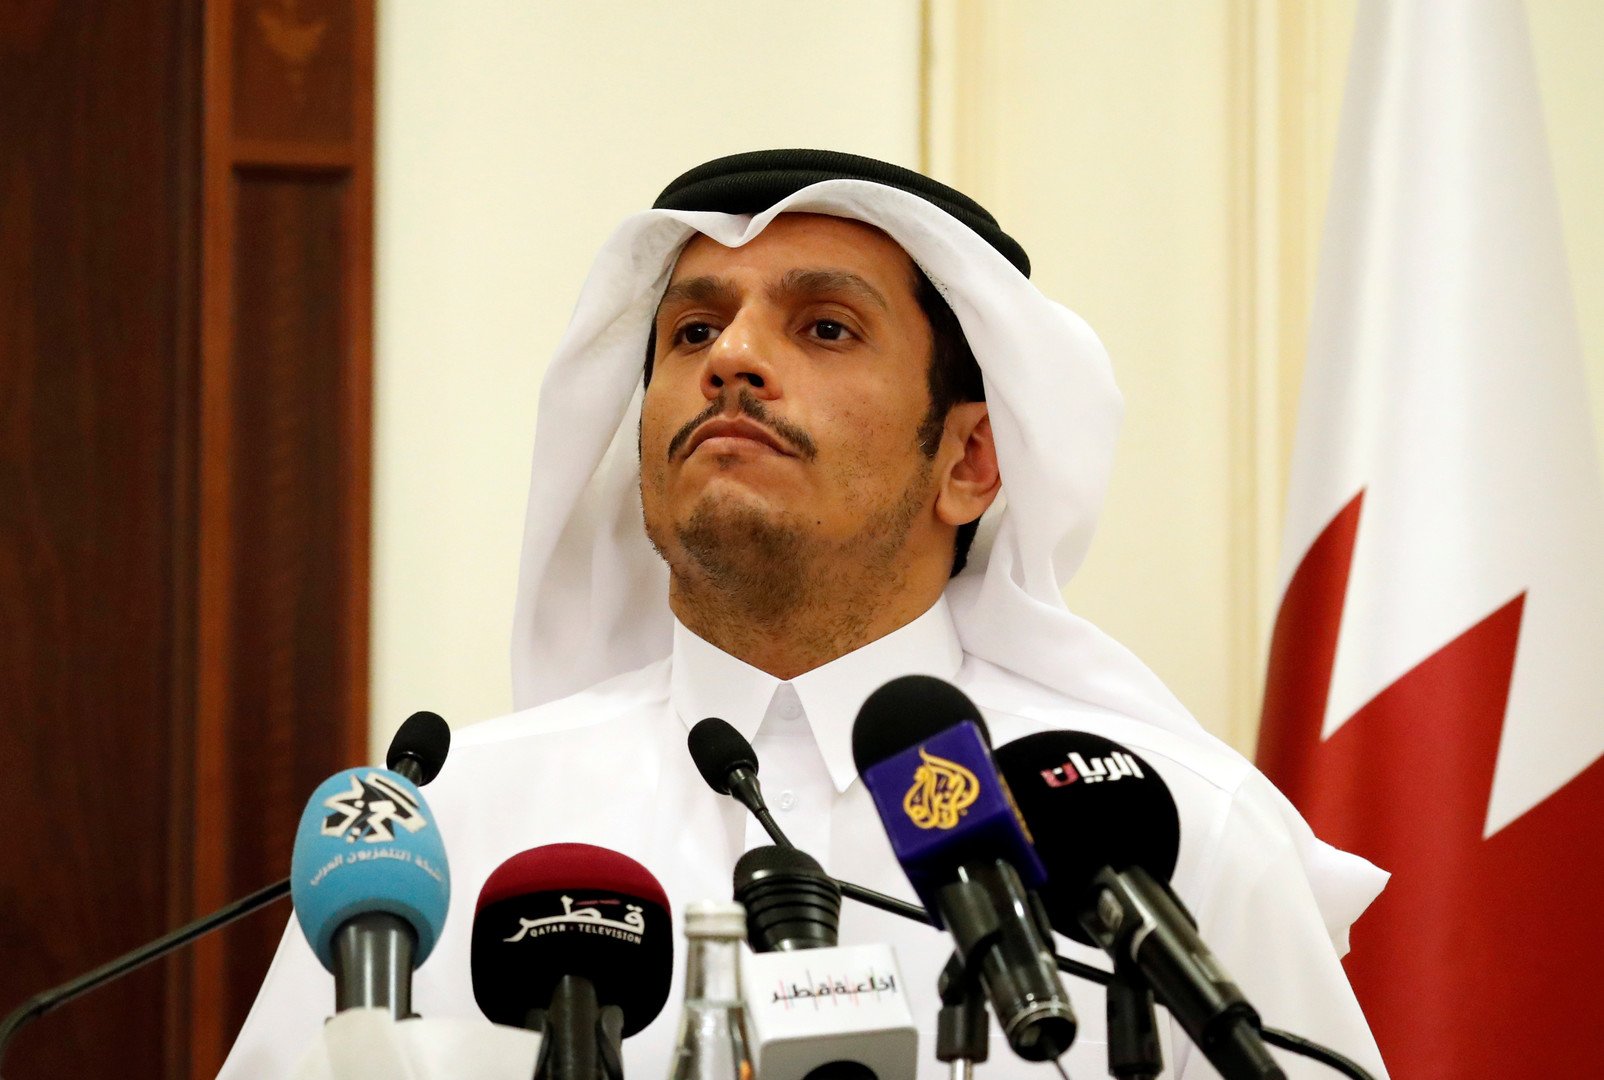 قطر للسعودية: لكم دينكم ولنا دين ومن أعطاكم الوصاية على الدول؟!